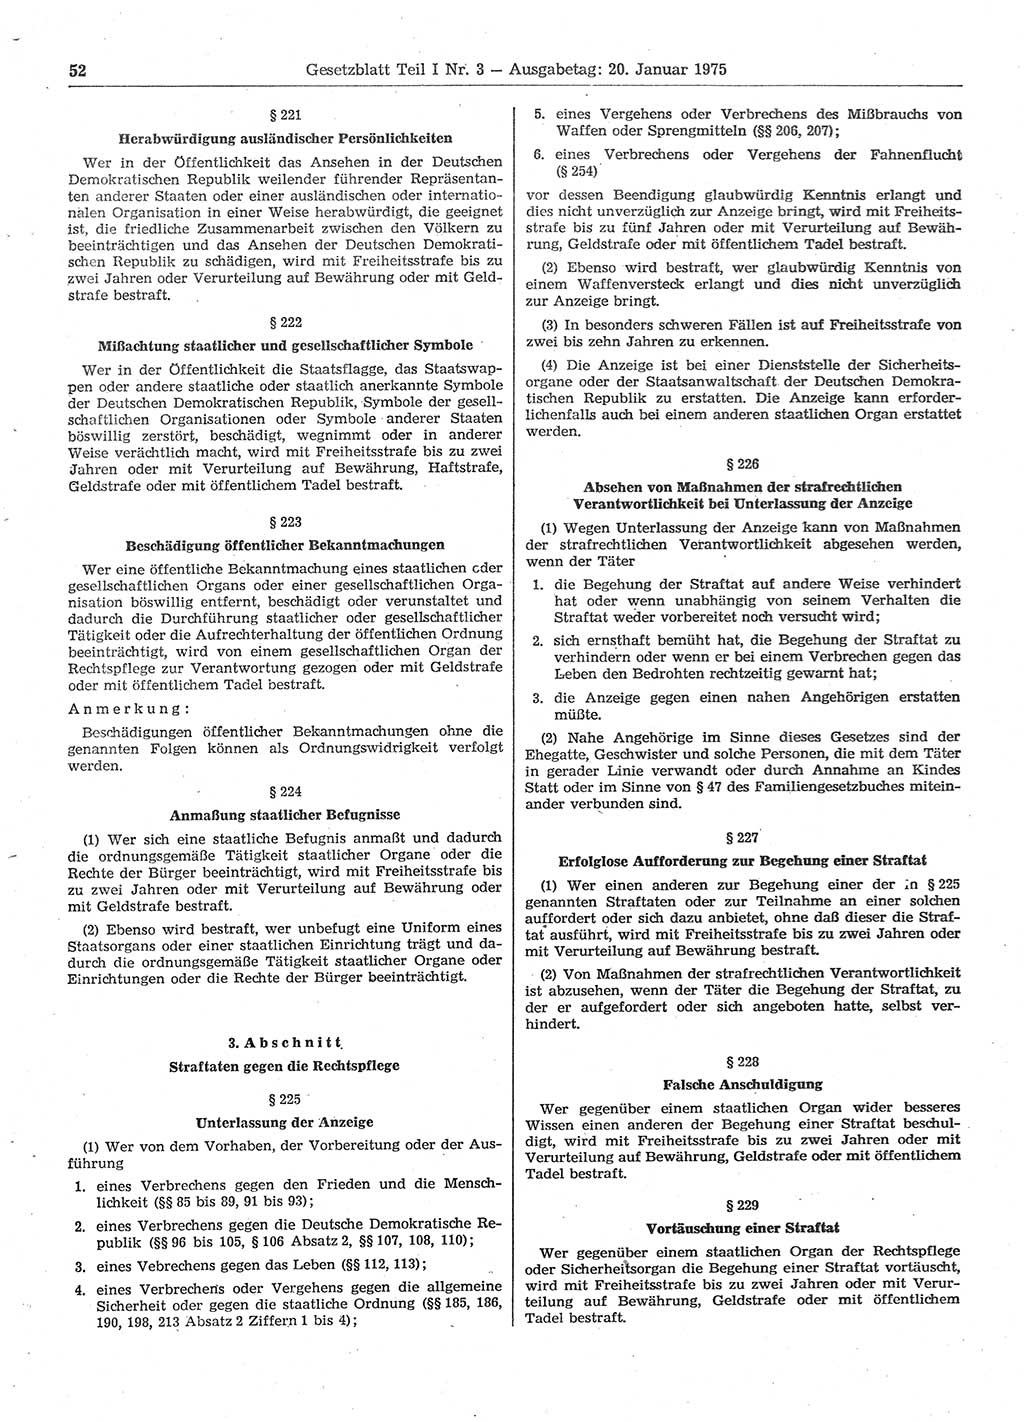 Gesetzblatt (GBl.) der Deutschen Demokratischen Republik (DDR) Teil Ⅰ 1975, Seite 52 (GBl. DDR Ⅰ 1975, S. 52)